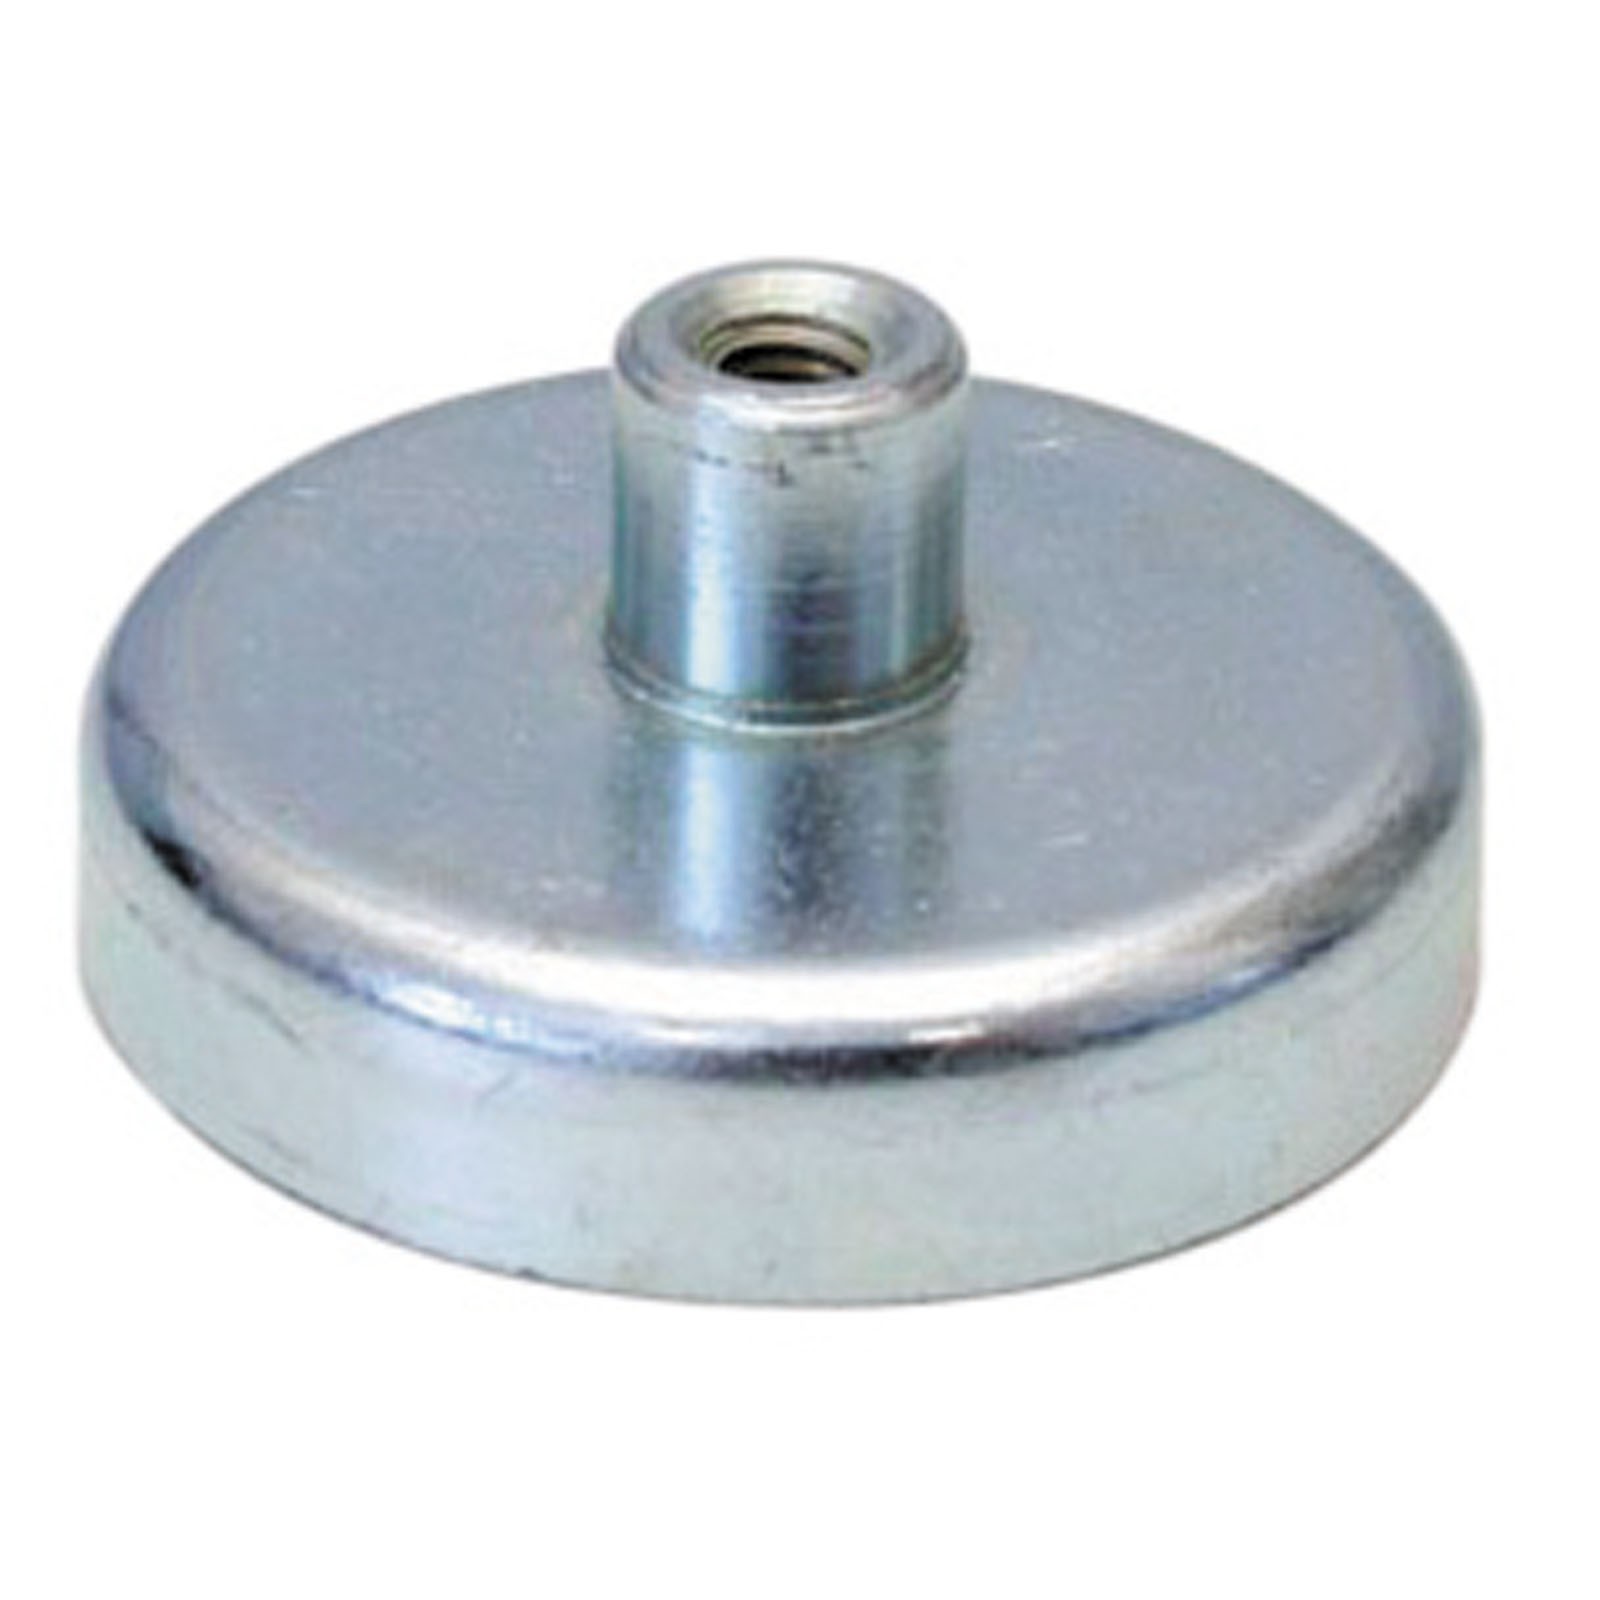 Flachgreifer Magnet mit Gewinde - Magnetfuß, Topfmagnet - div. Größen 10 - 125mm Größe:50.0 mm von Rimag